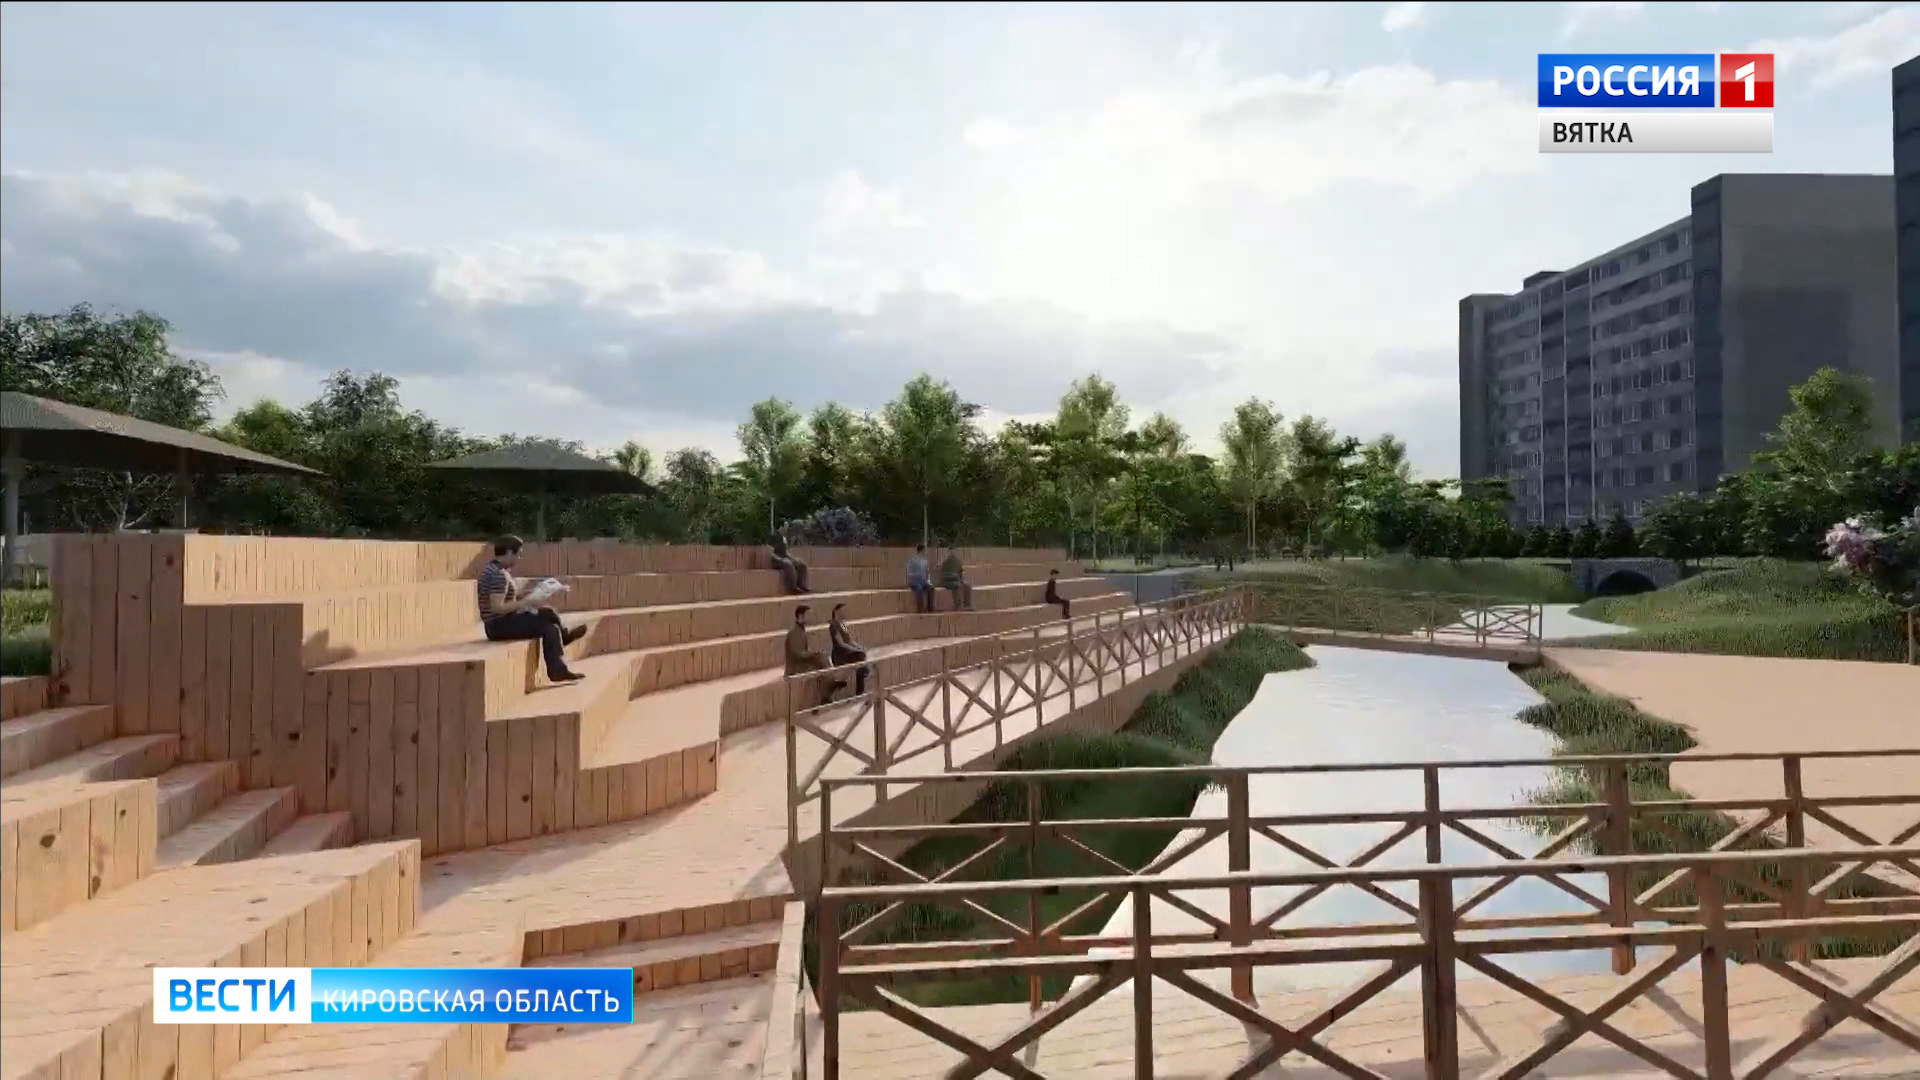 Активисты представили завершенный проект «Уткин парка» в Кирове